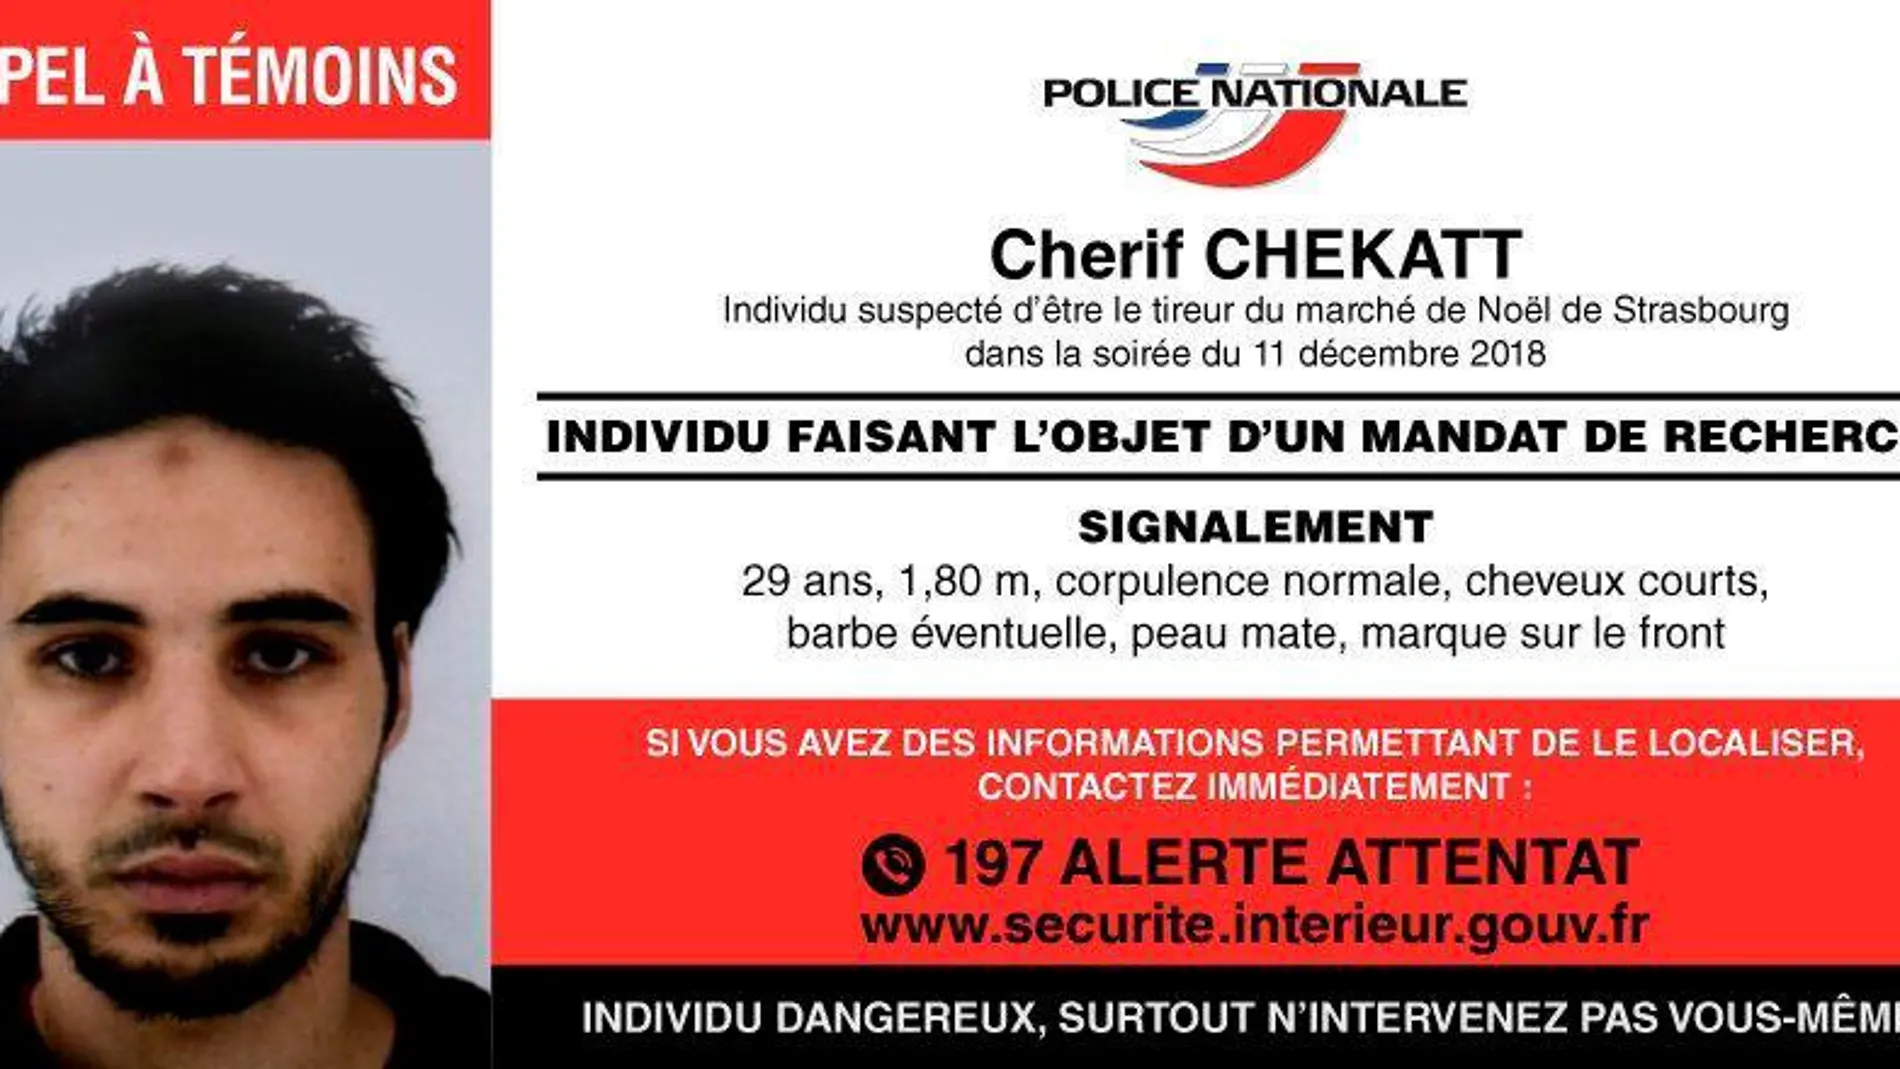 Chérif Chekatt, que perpetró el tiroteo de Estrasburgo en diciembre de 2018, se radicalizó tras varias encarcelaciones